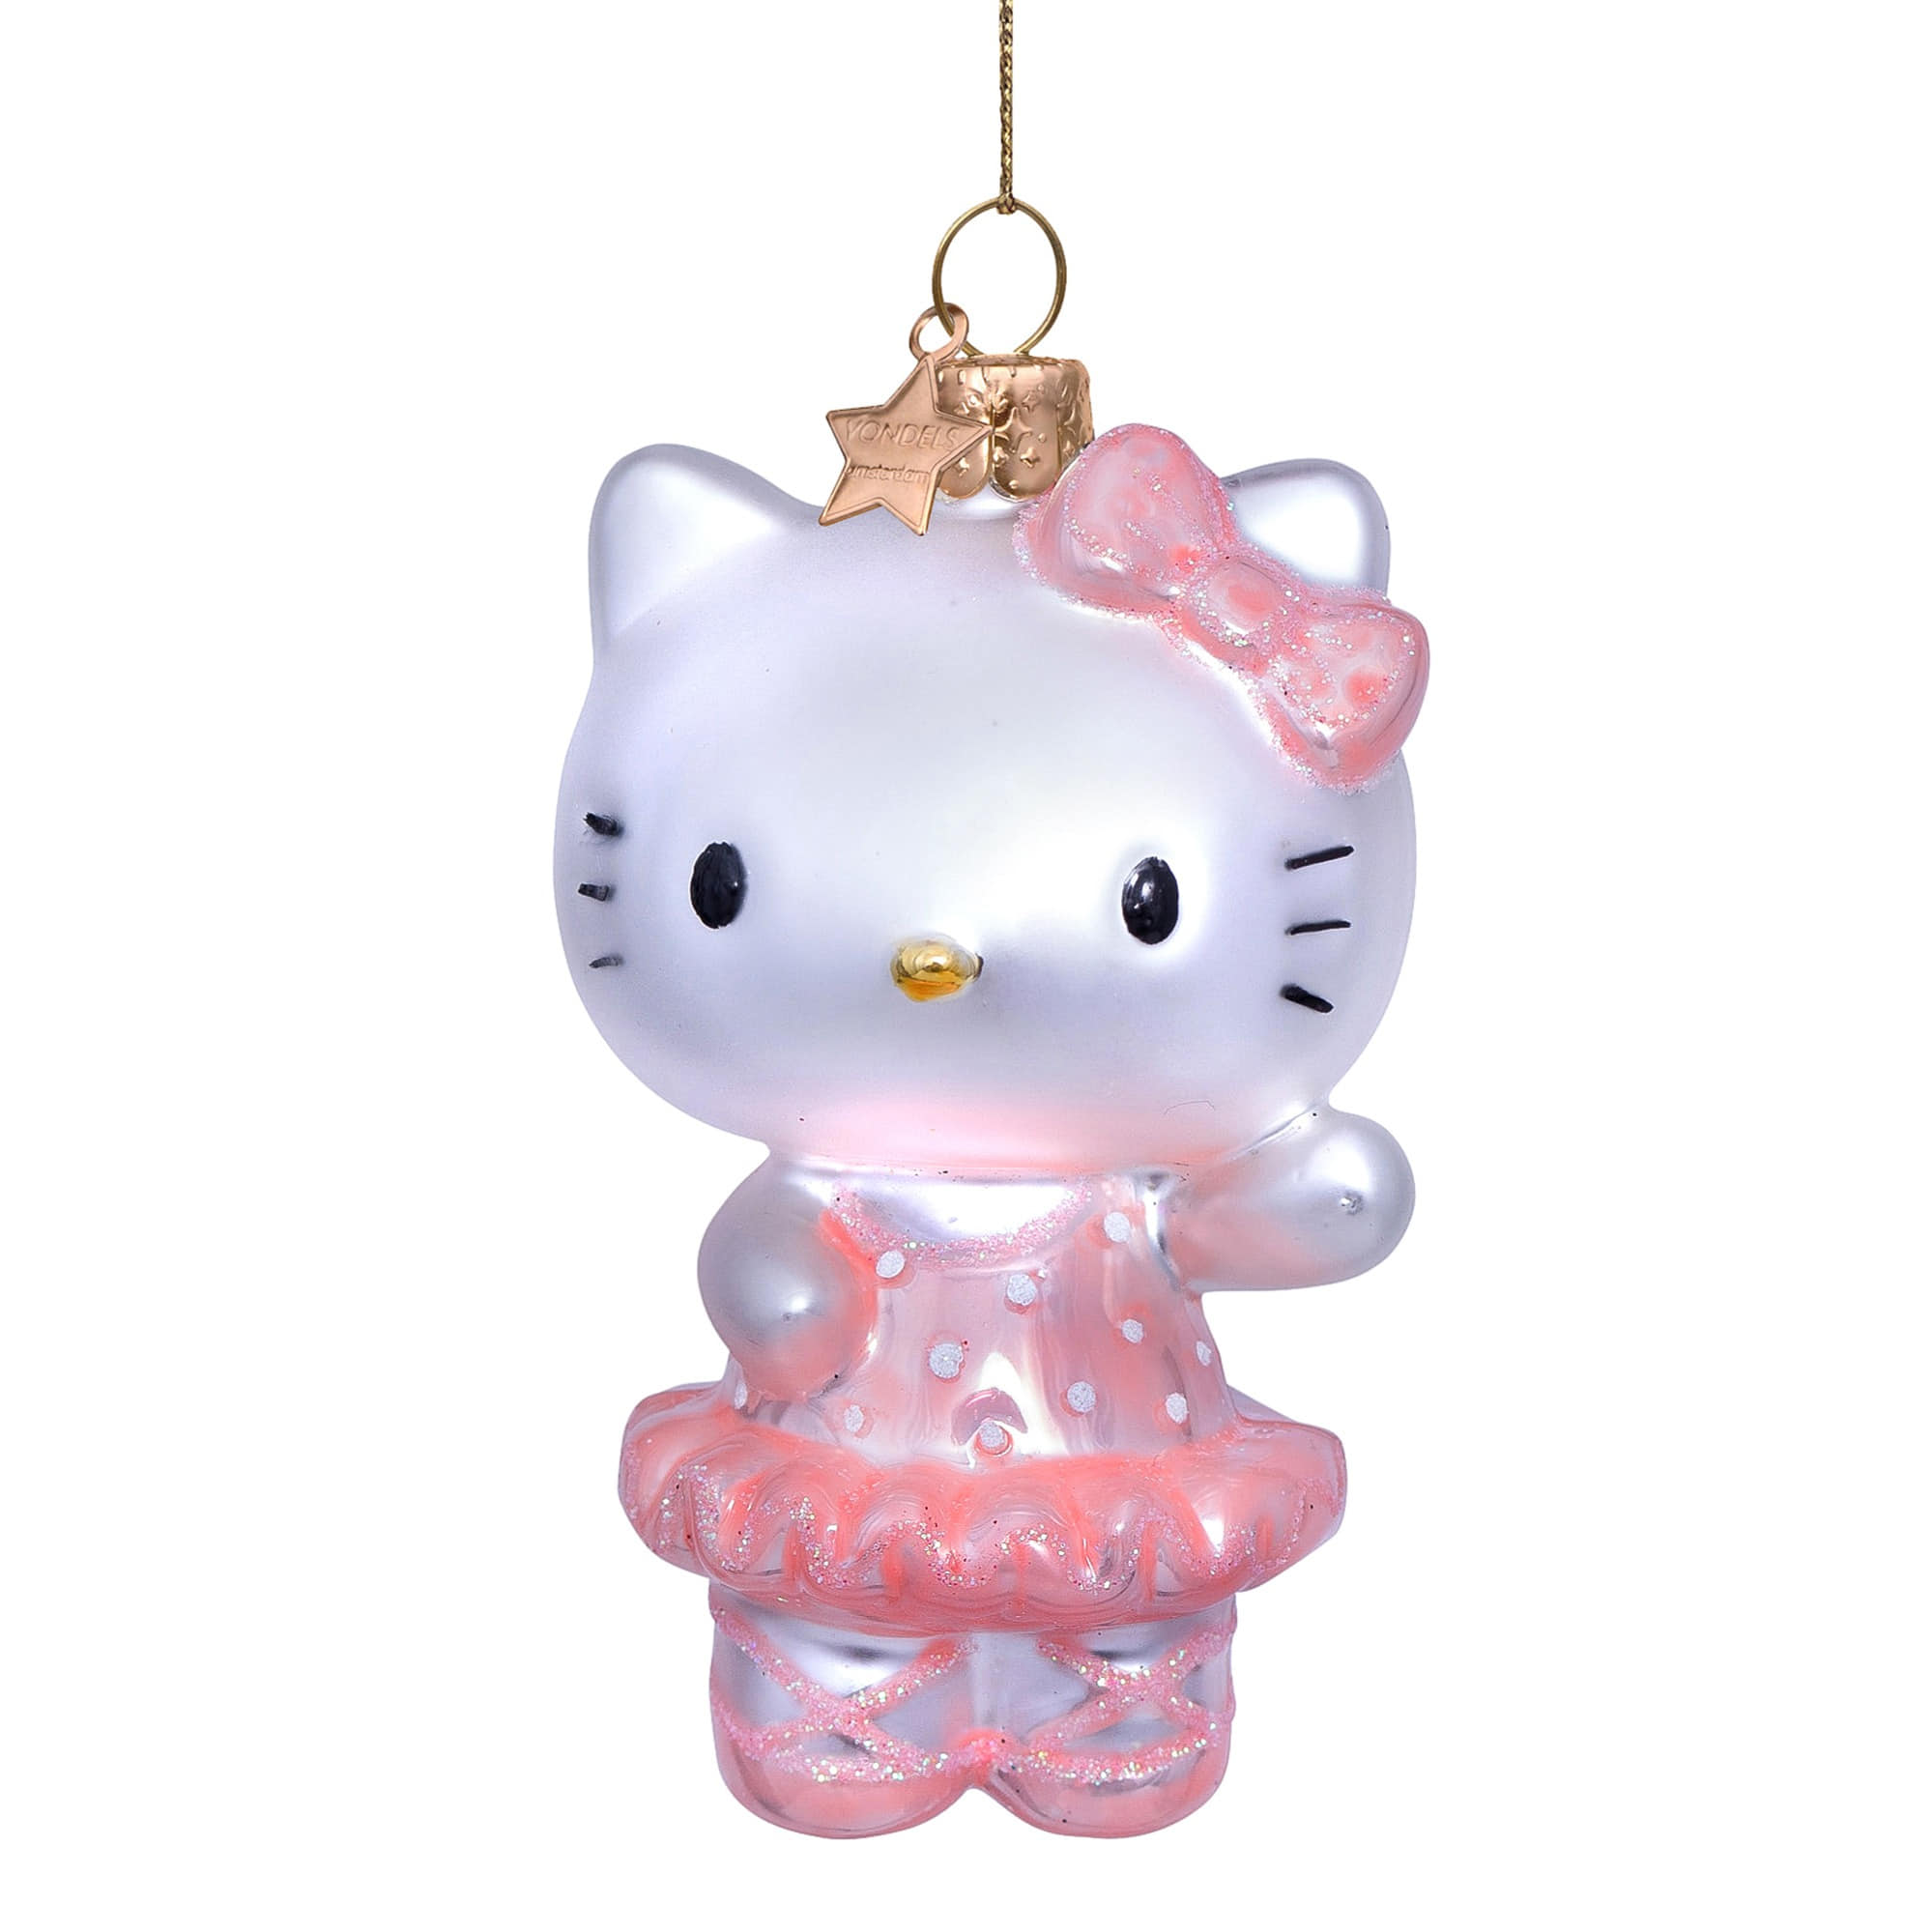 VONDELS Ornament Glass Hello Kitty Ballerina